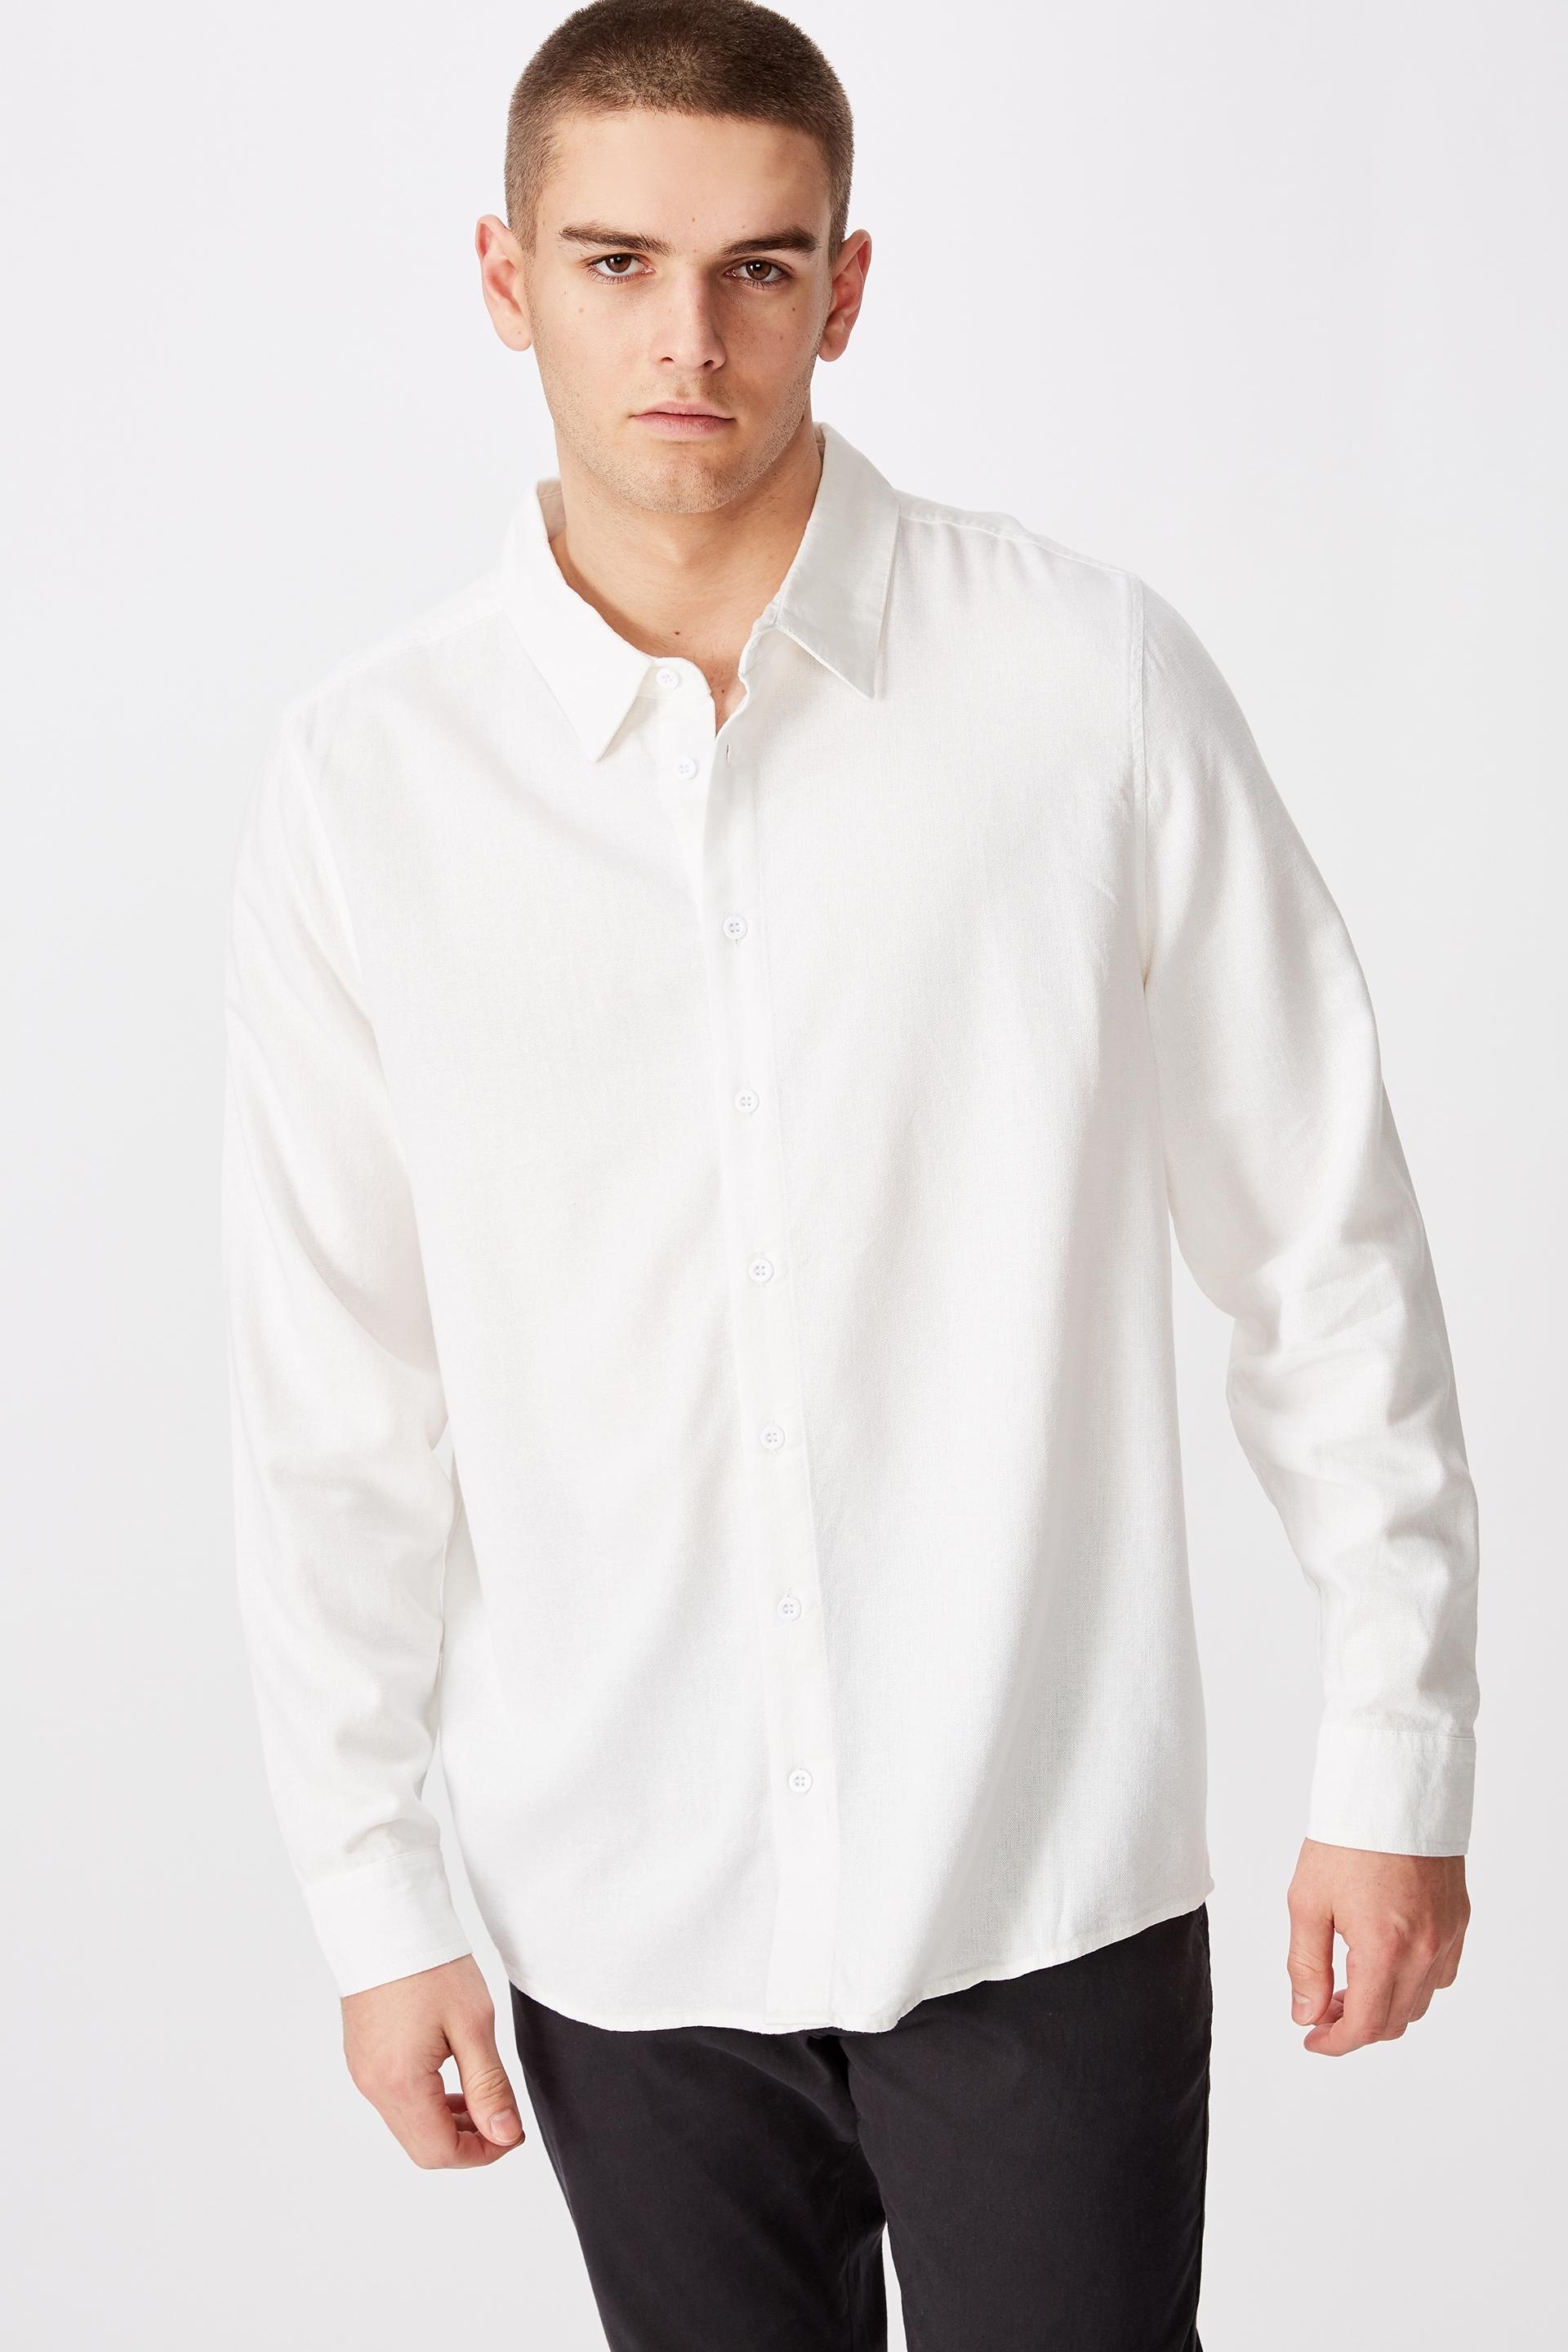 Long sleeve linen blend shirt-white Factorie Shirts | Superbalist.com